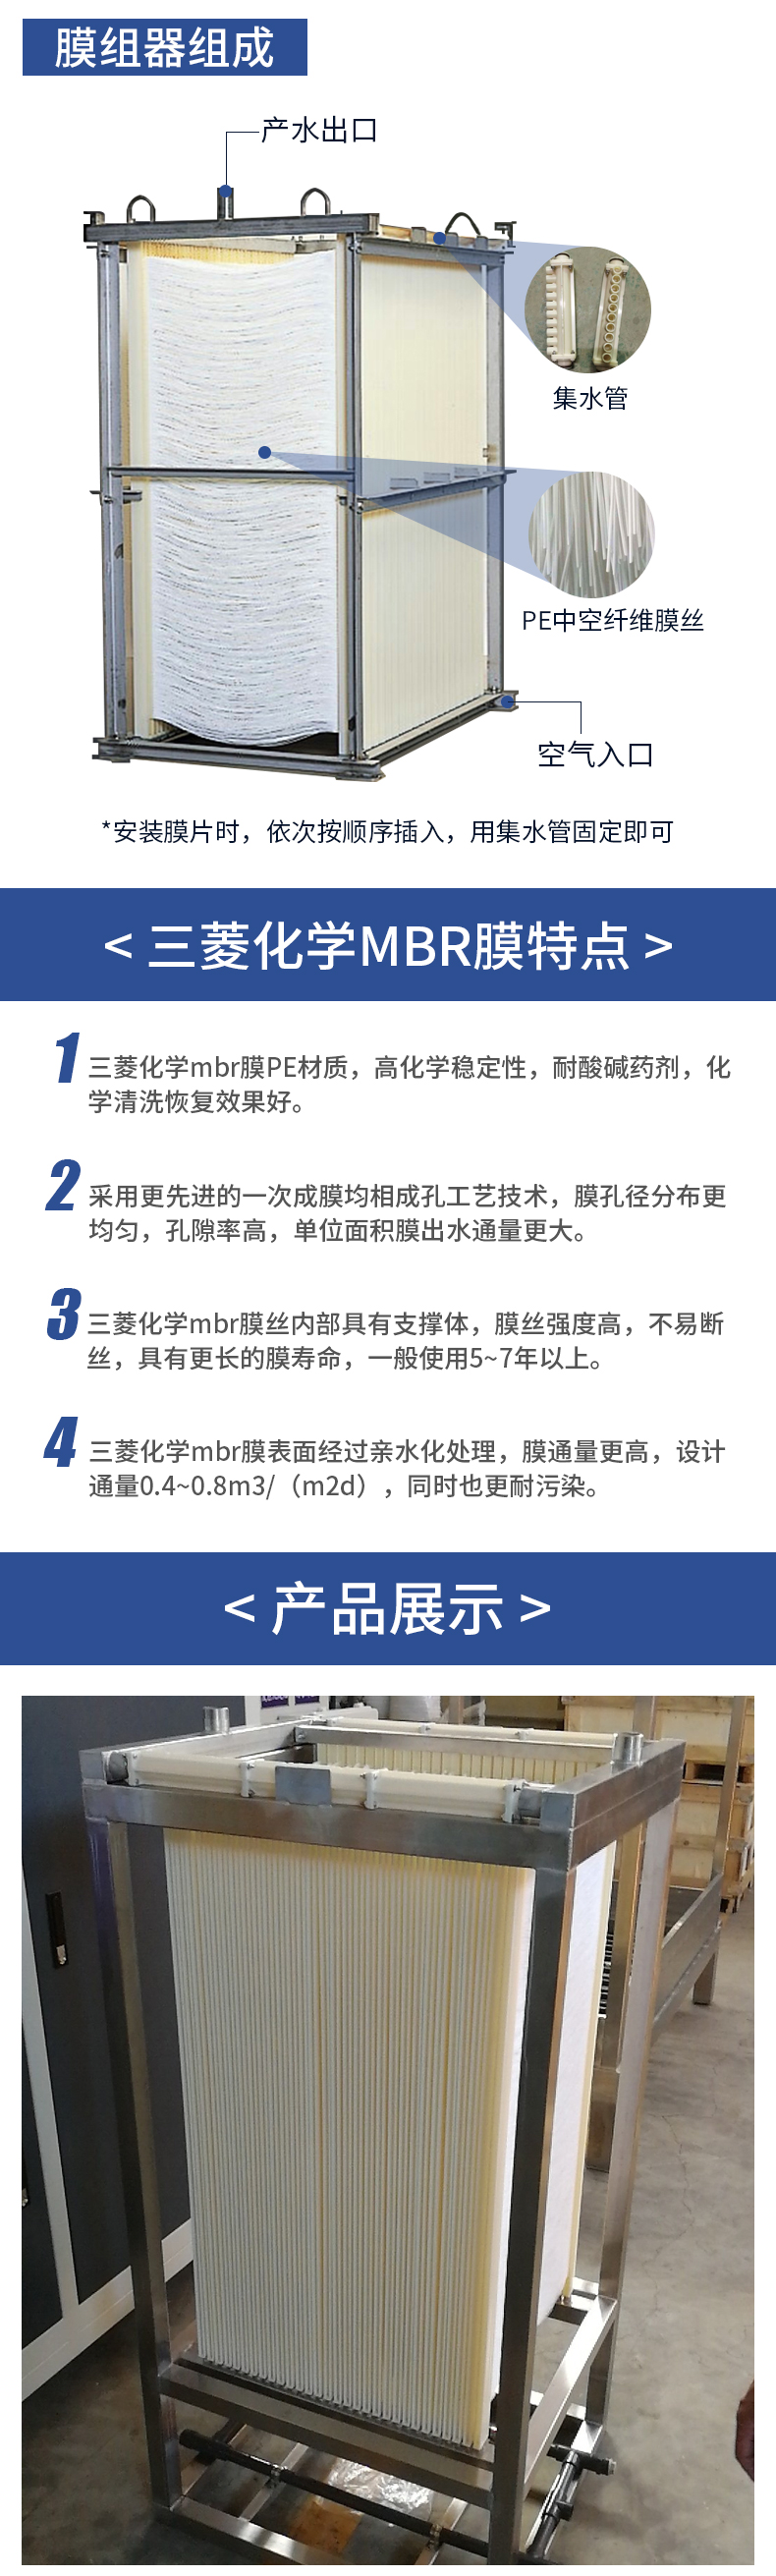 三菱化学MBR膜